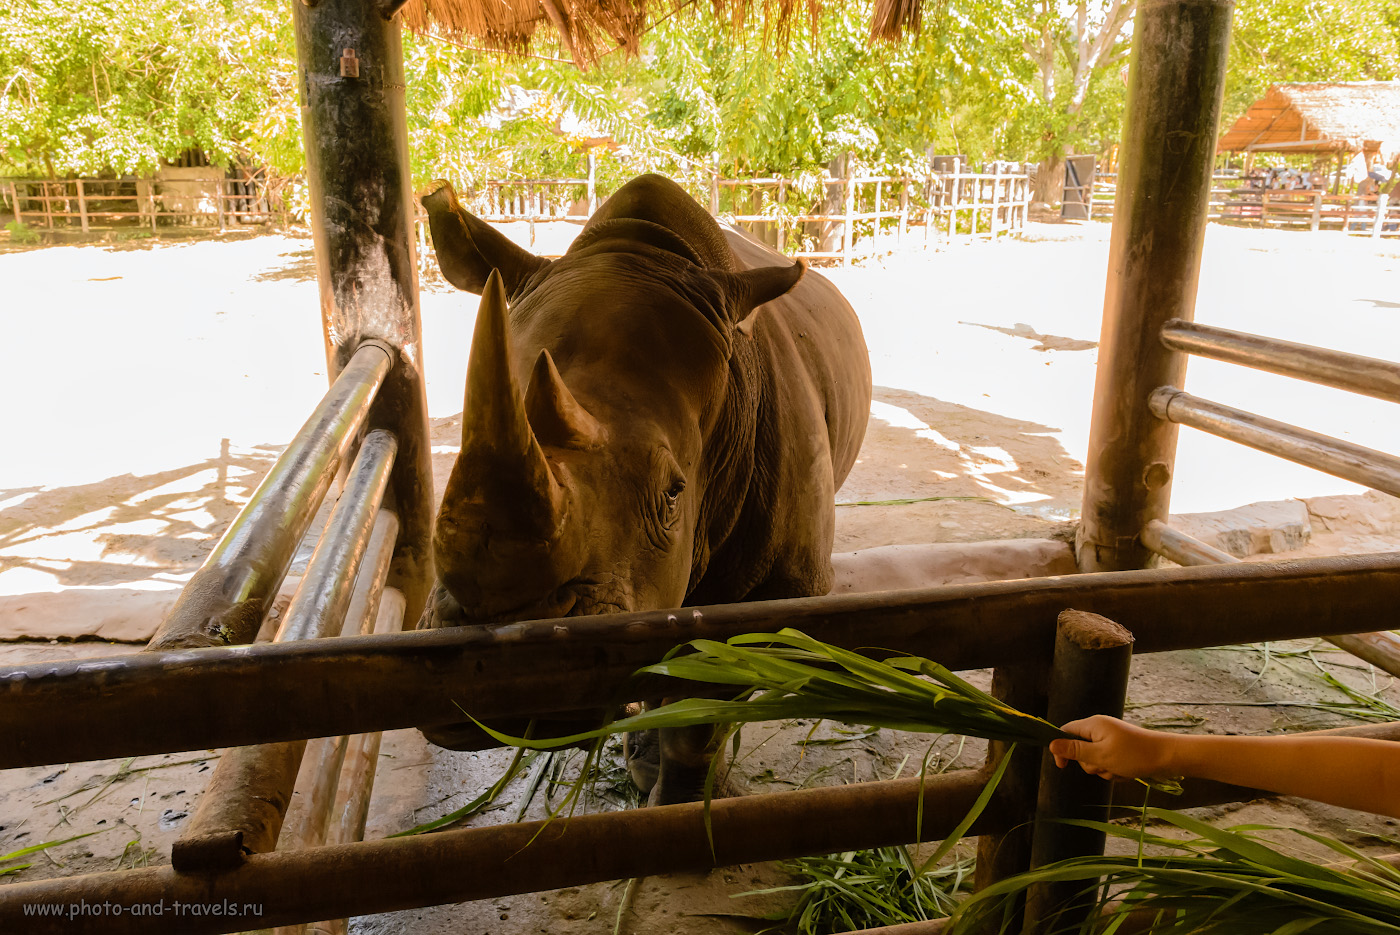 Фотография 12. Белый носорог в зоопарке «Кхао Кхео». Сколько радости подарит ребенку общение с животными! 1/500, +0.67, 9.0, 5600, 24.